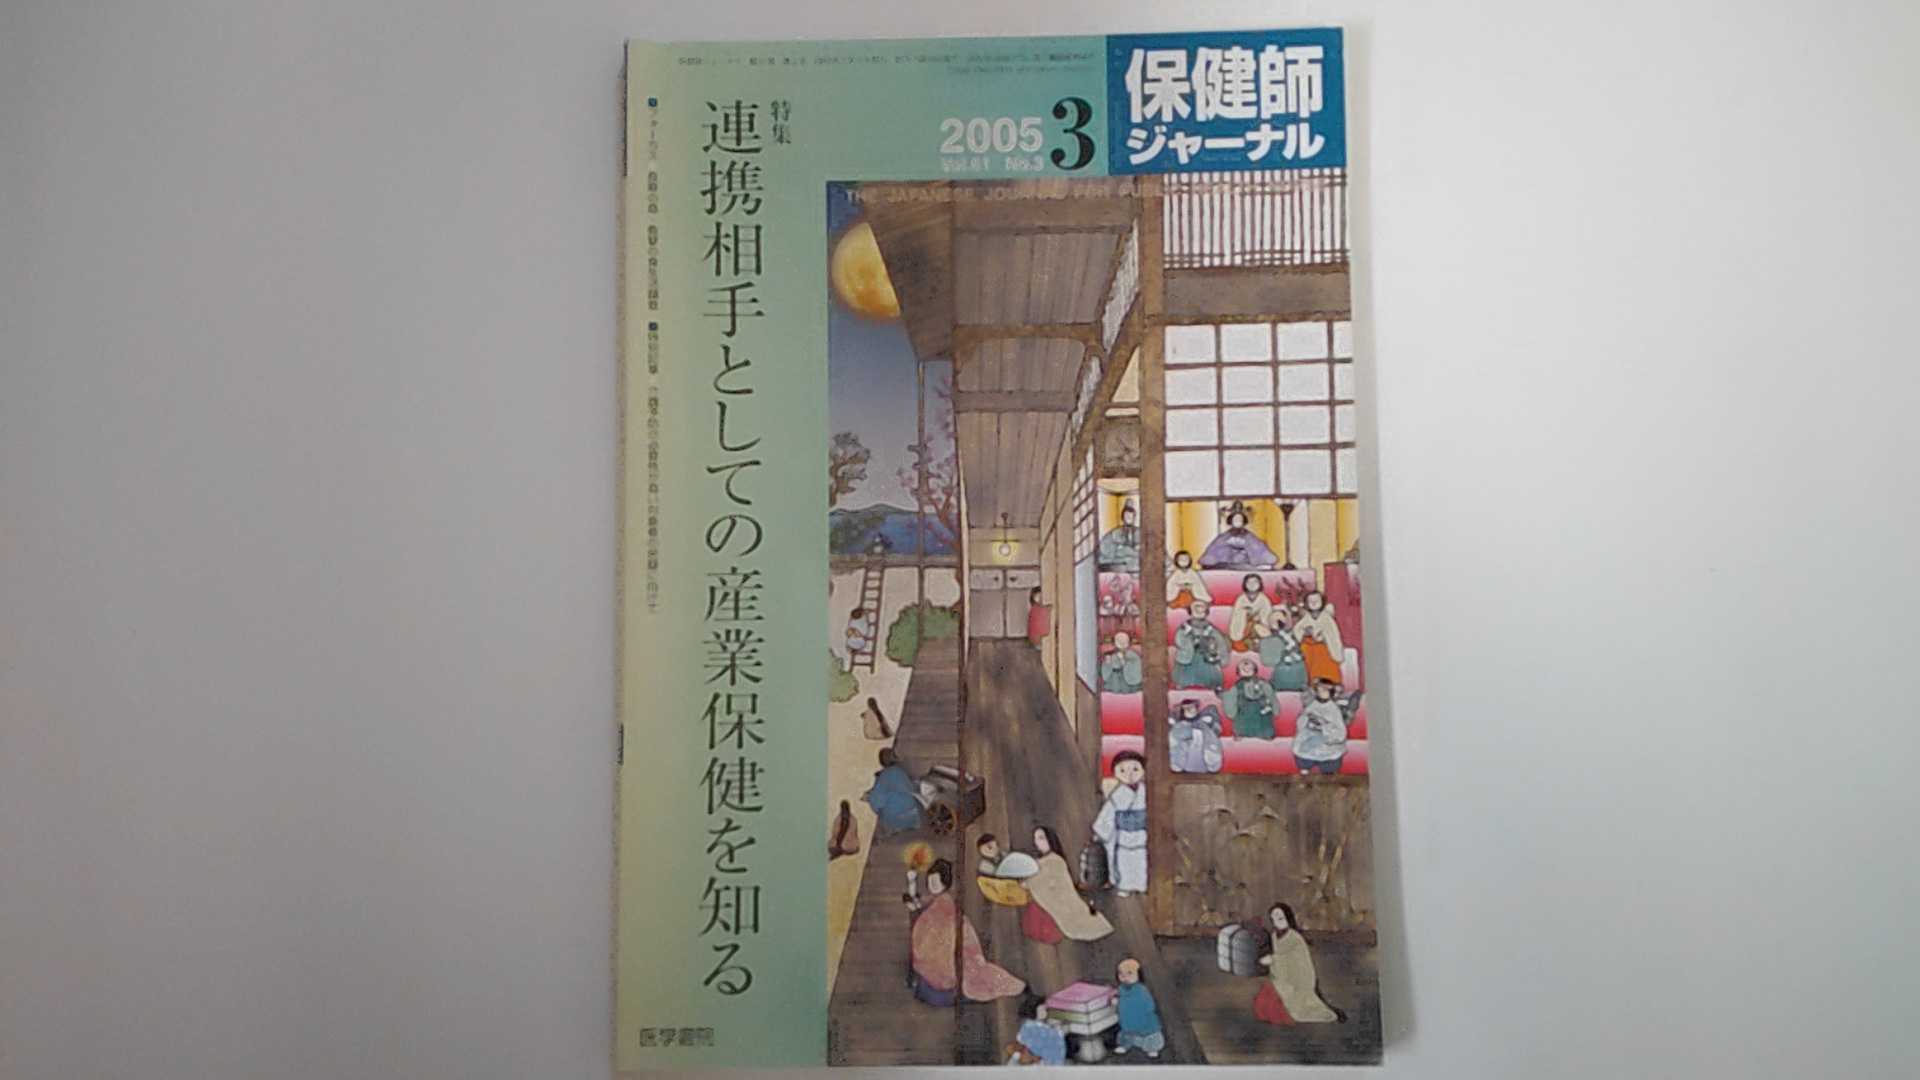 【中古】保健師ジャーナル Vol.61 No.3 2005年